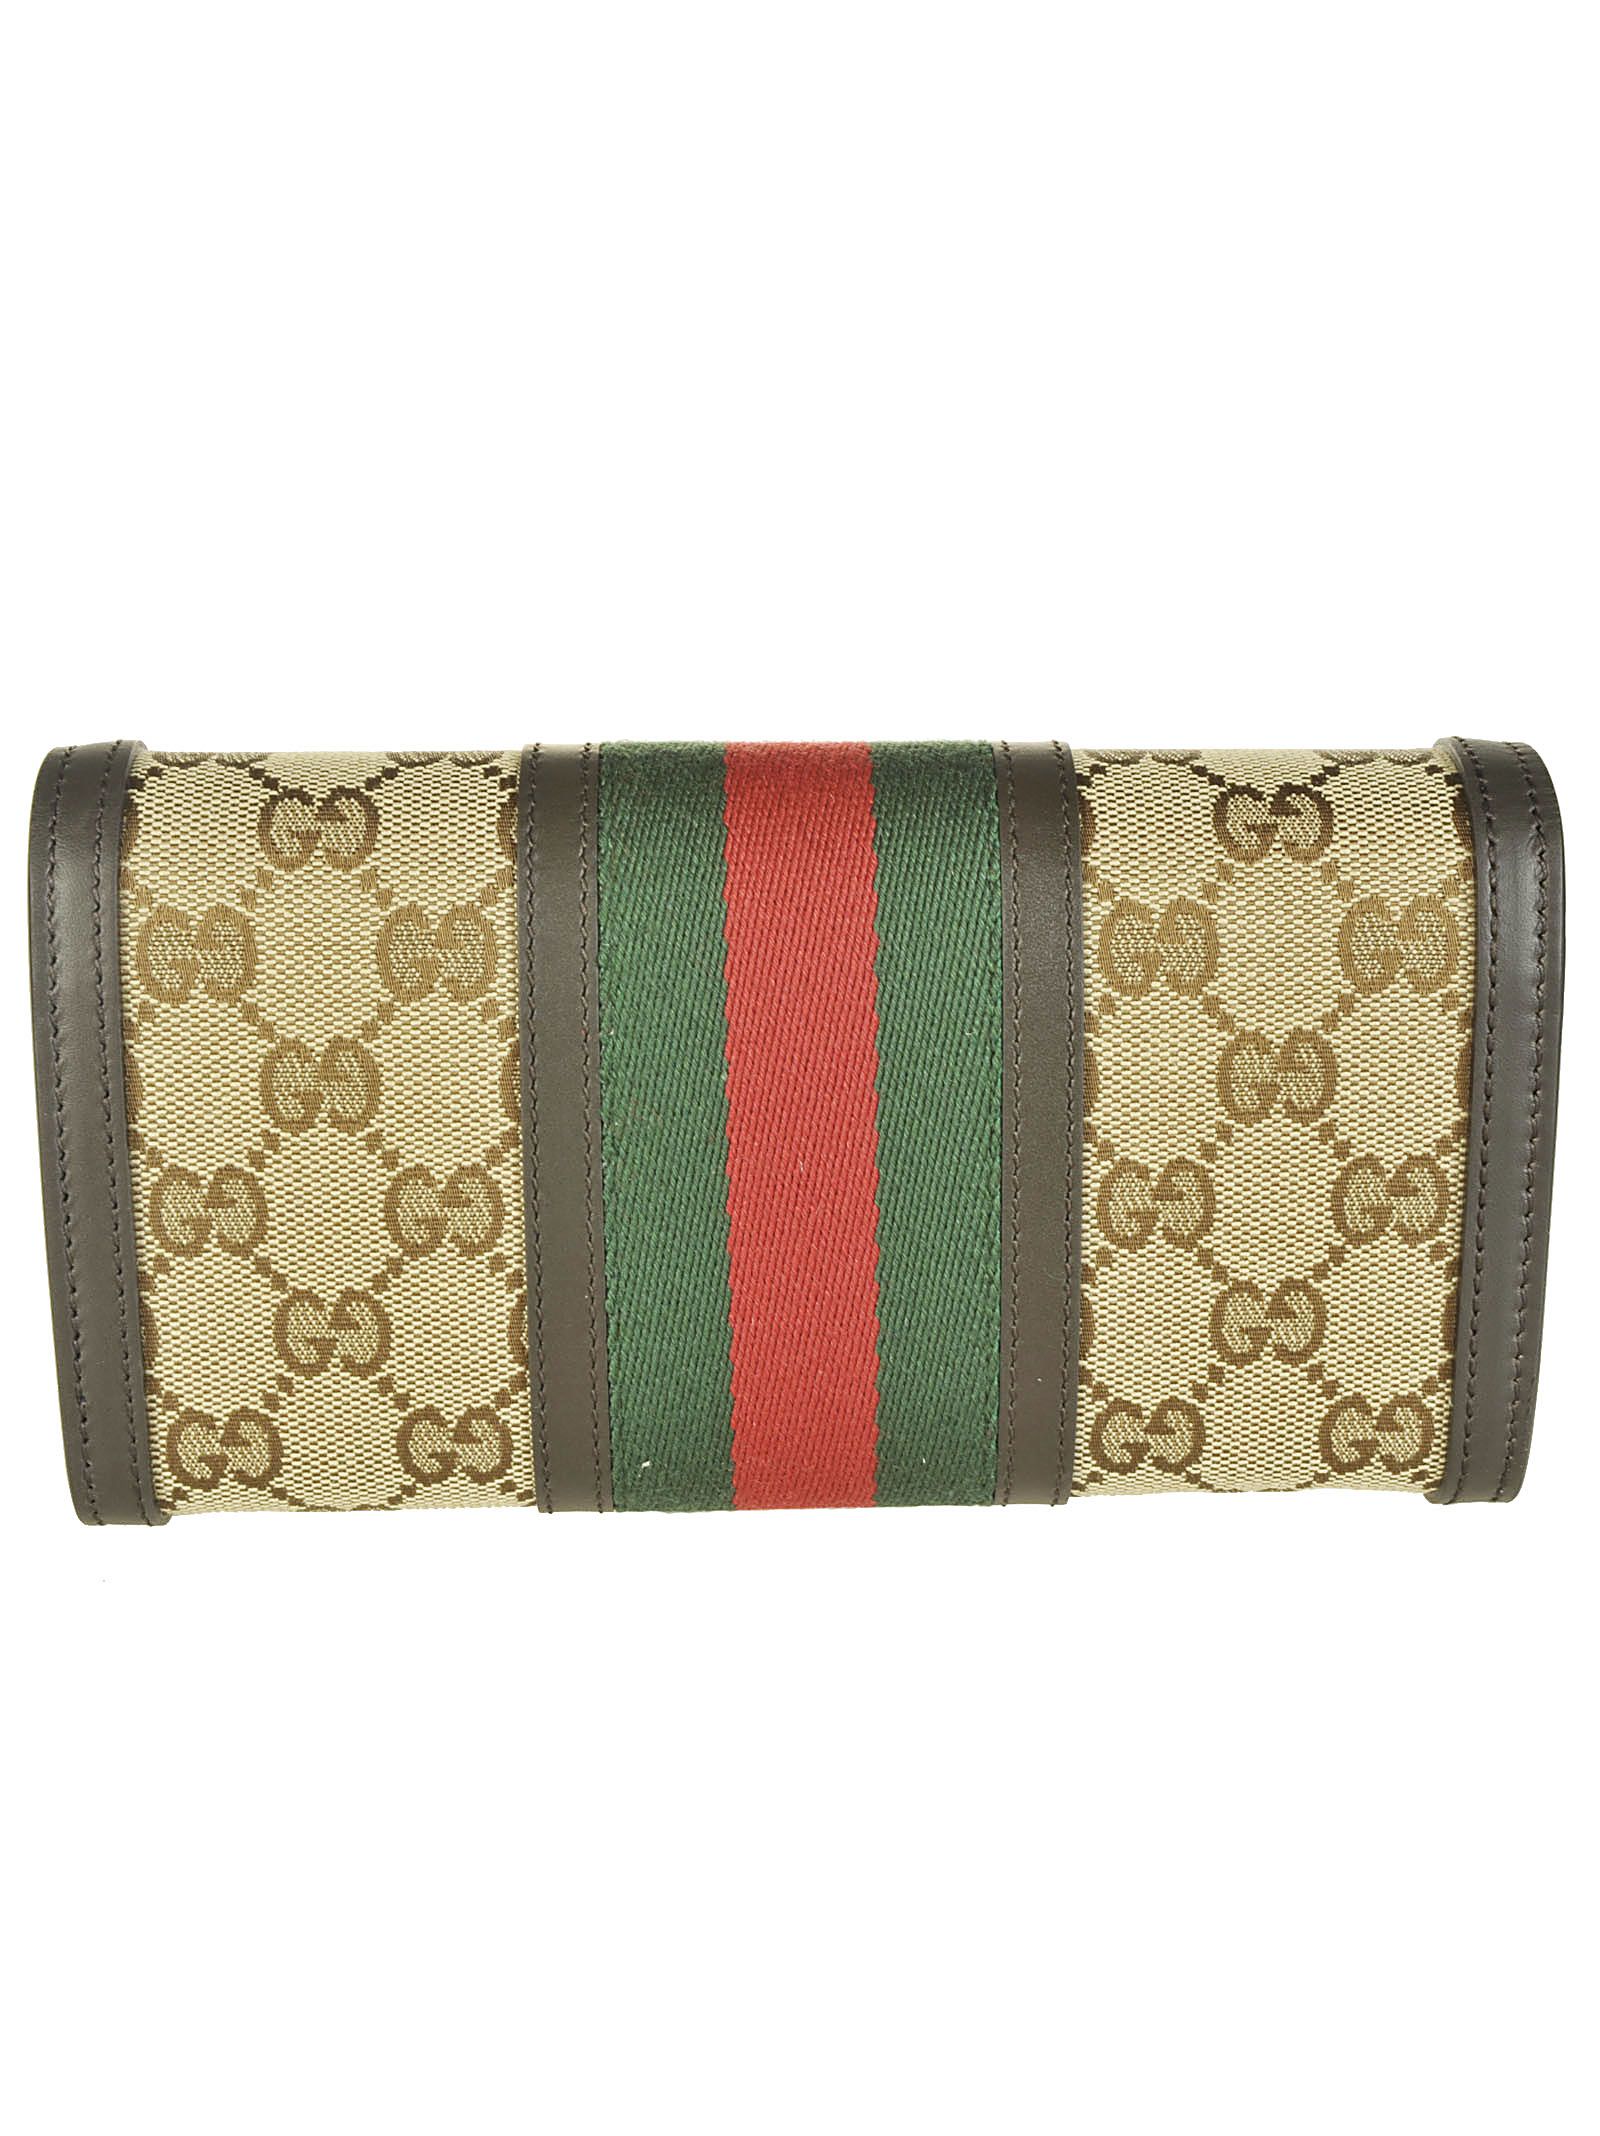 Gucci - Gucci Continental Wallet - Beige/Ebony, Women&#39;s Wallets | Italist